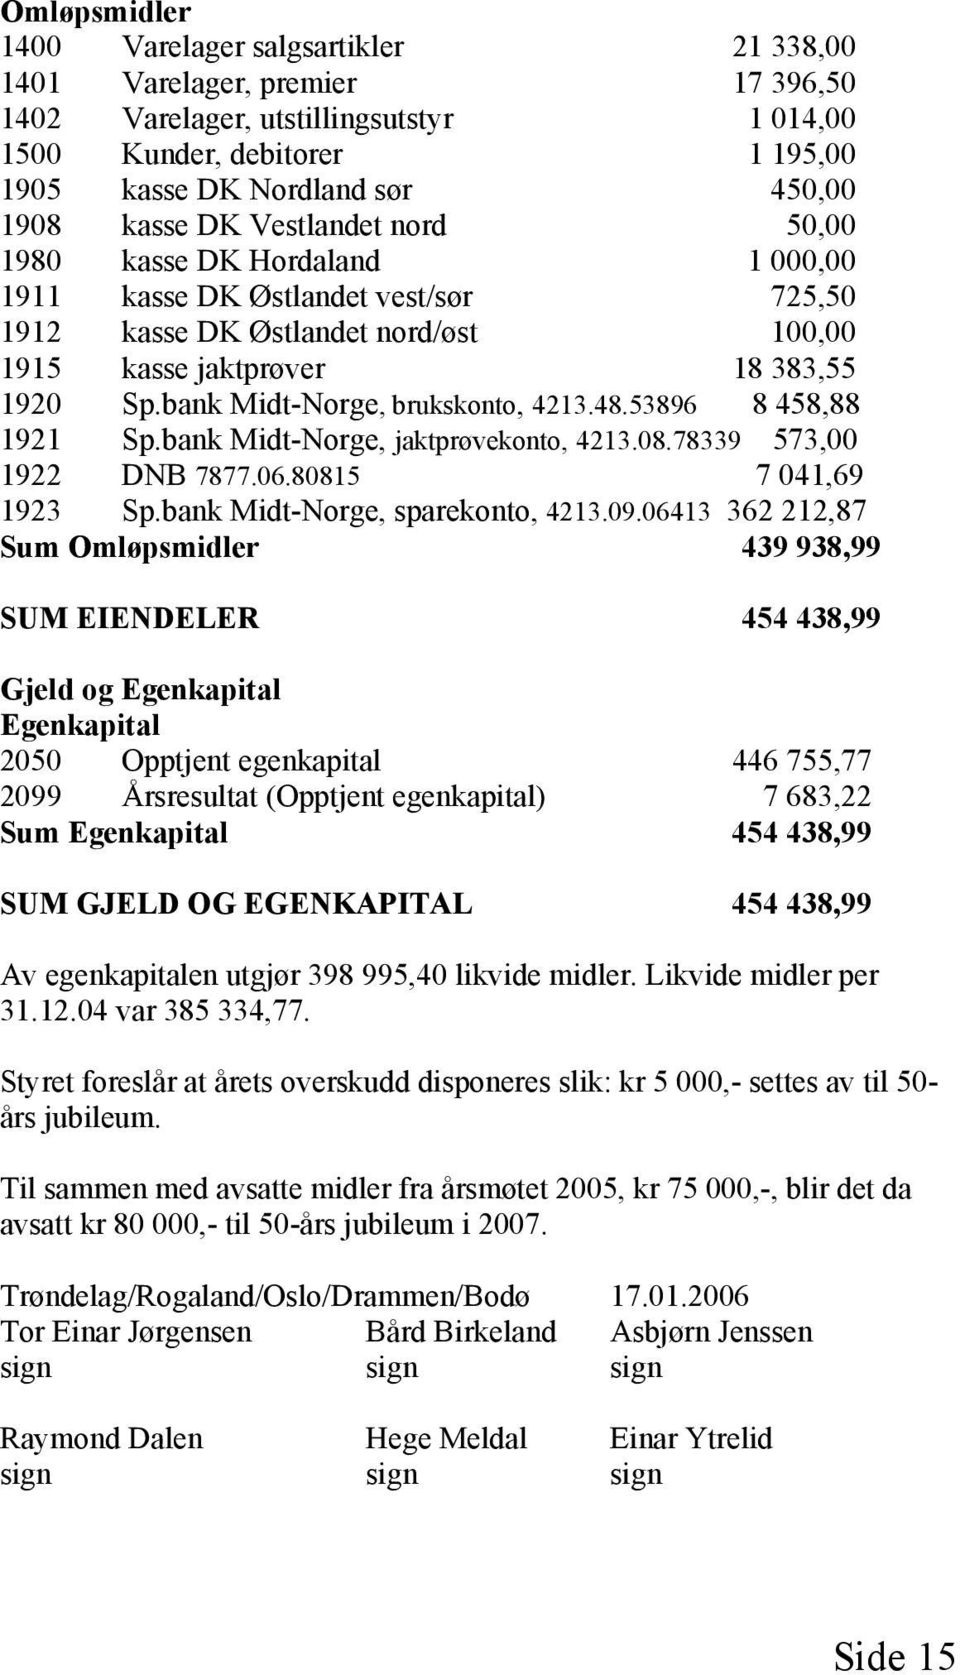 bank Midt-Norge, brukskonto, 4213.48.53896 8 458,88 1921 Sp.bank Midt-Norge, jaktprøvekonto, 4213.08.78339 573,00 1922 DNB 7877.06.80815 7 041,69 1923 Sp.bank Midt-Norge, sparekonto, 4213.09.